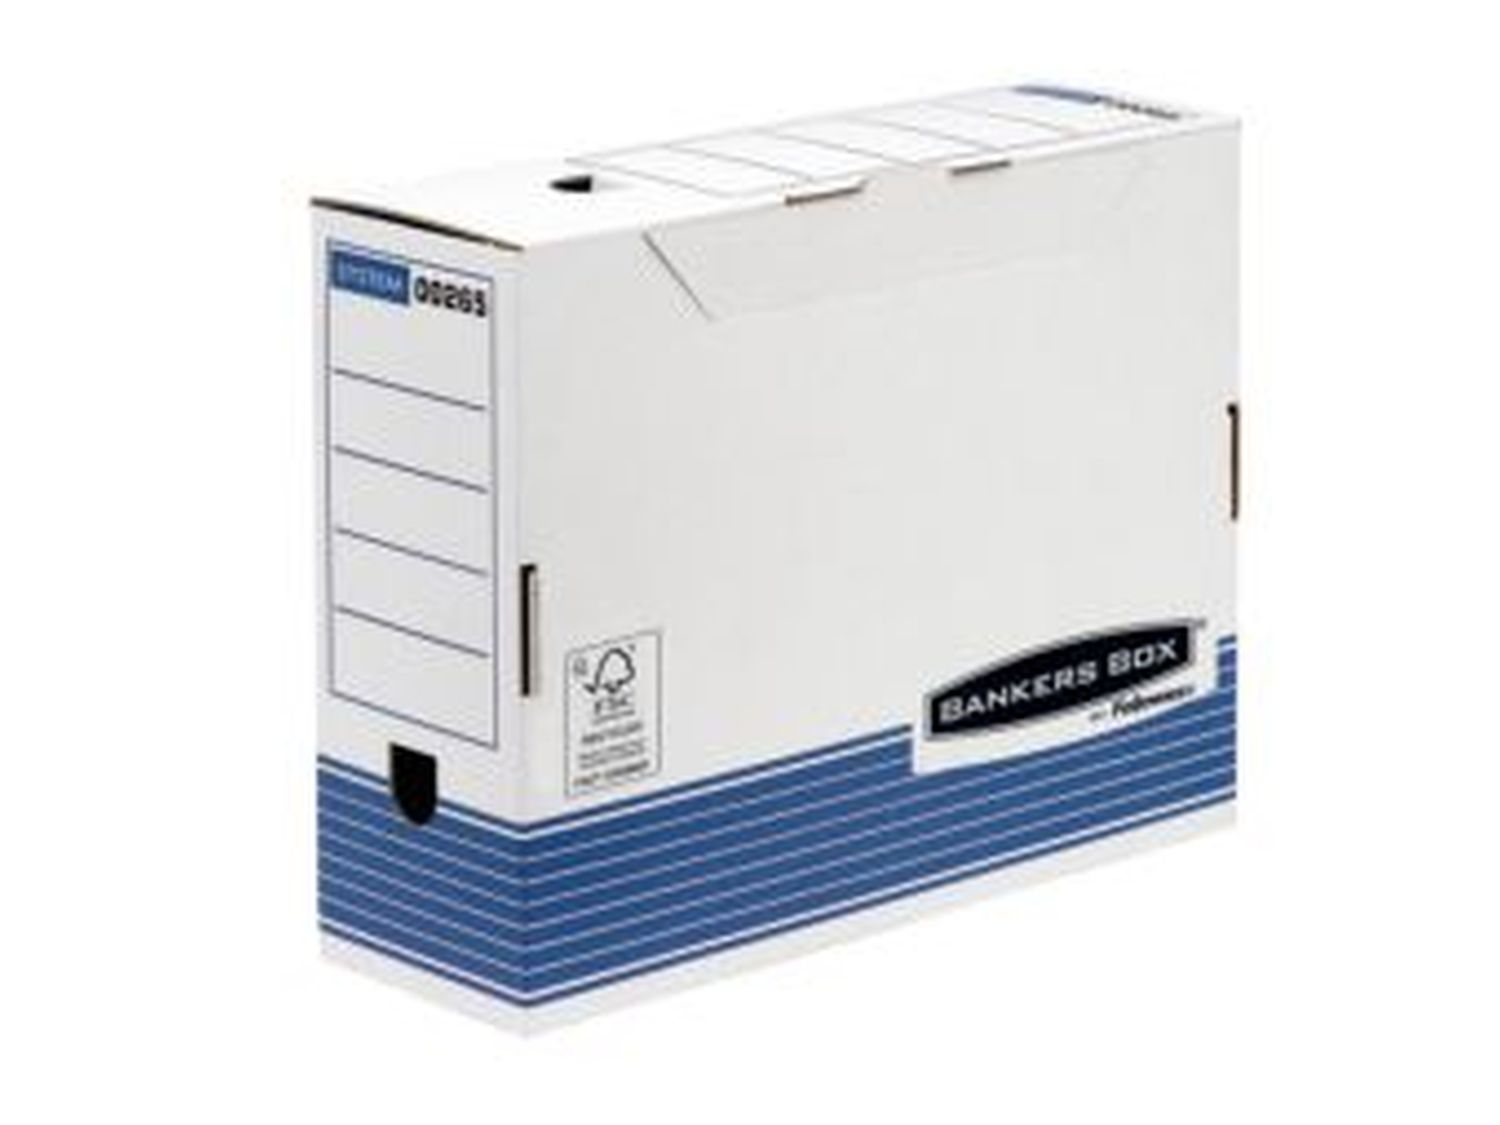 Archivschachtel Bankers Box® R-Kive FW0026501, DIN A4, Rückenbreite 100 mm